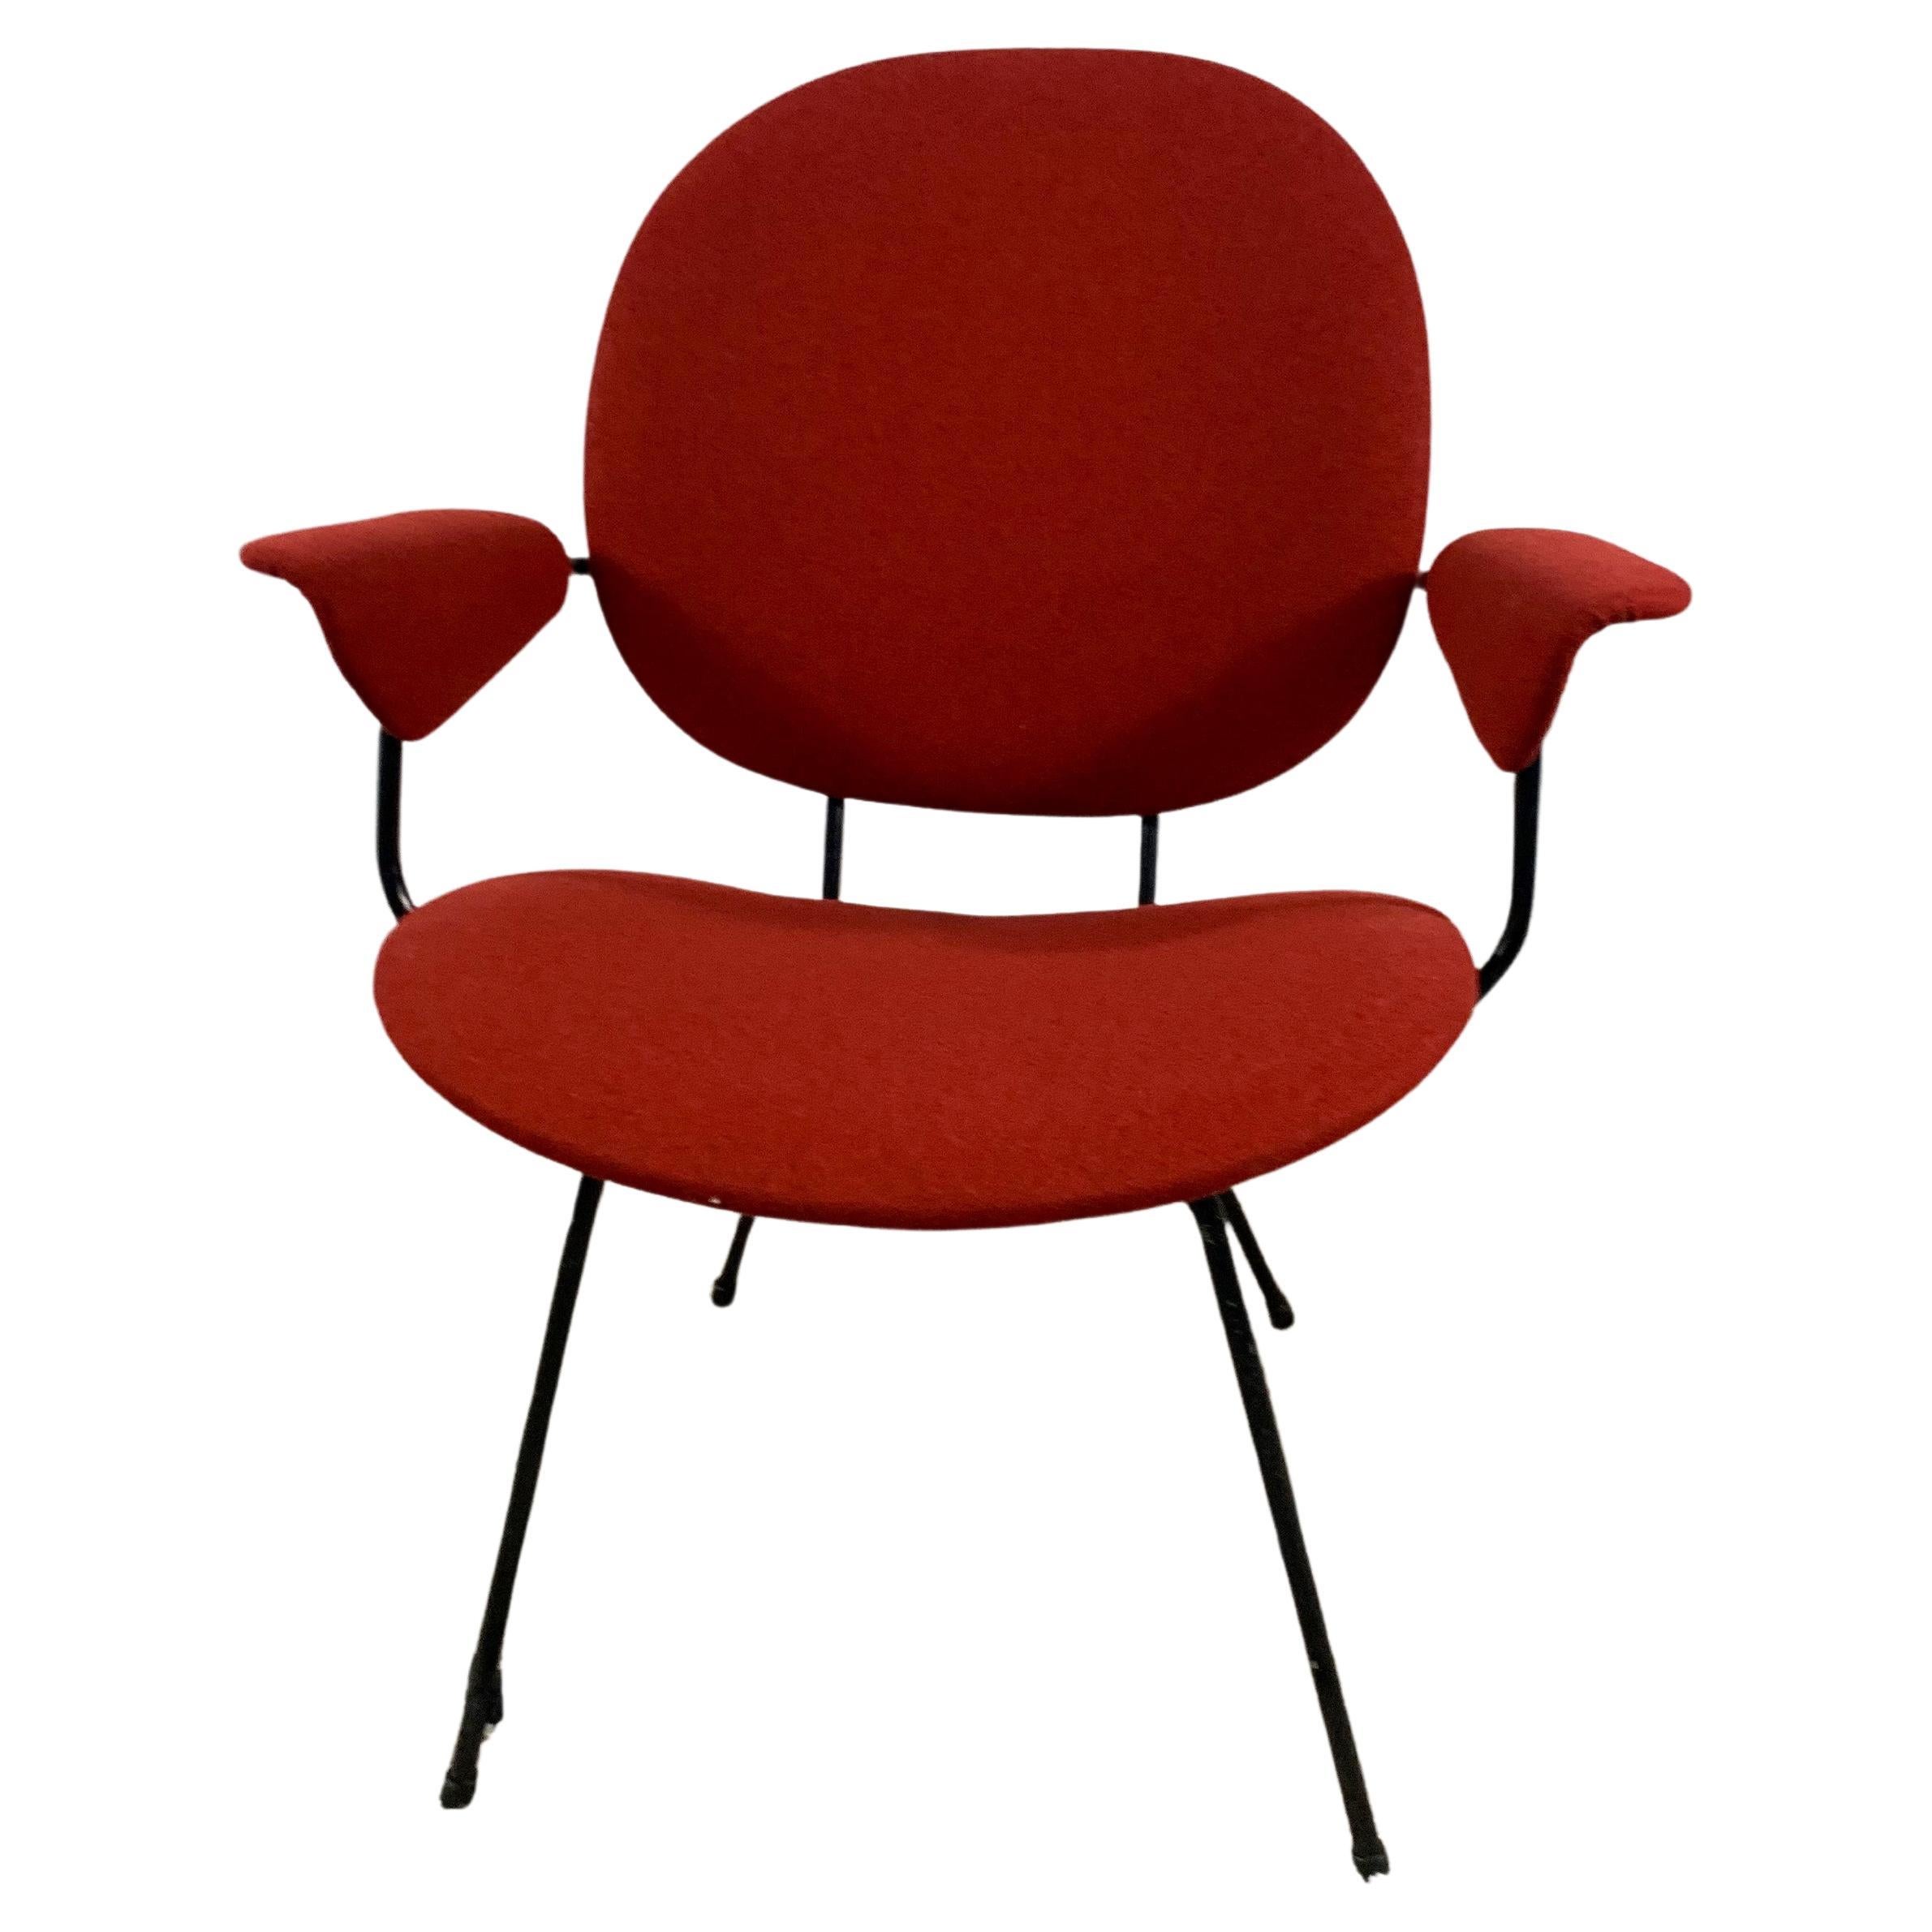 Stuhl entworfen von W.H.Gispen für die niederländische Firma Kembo